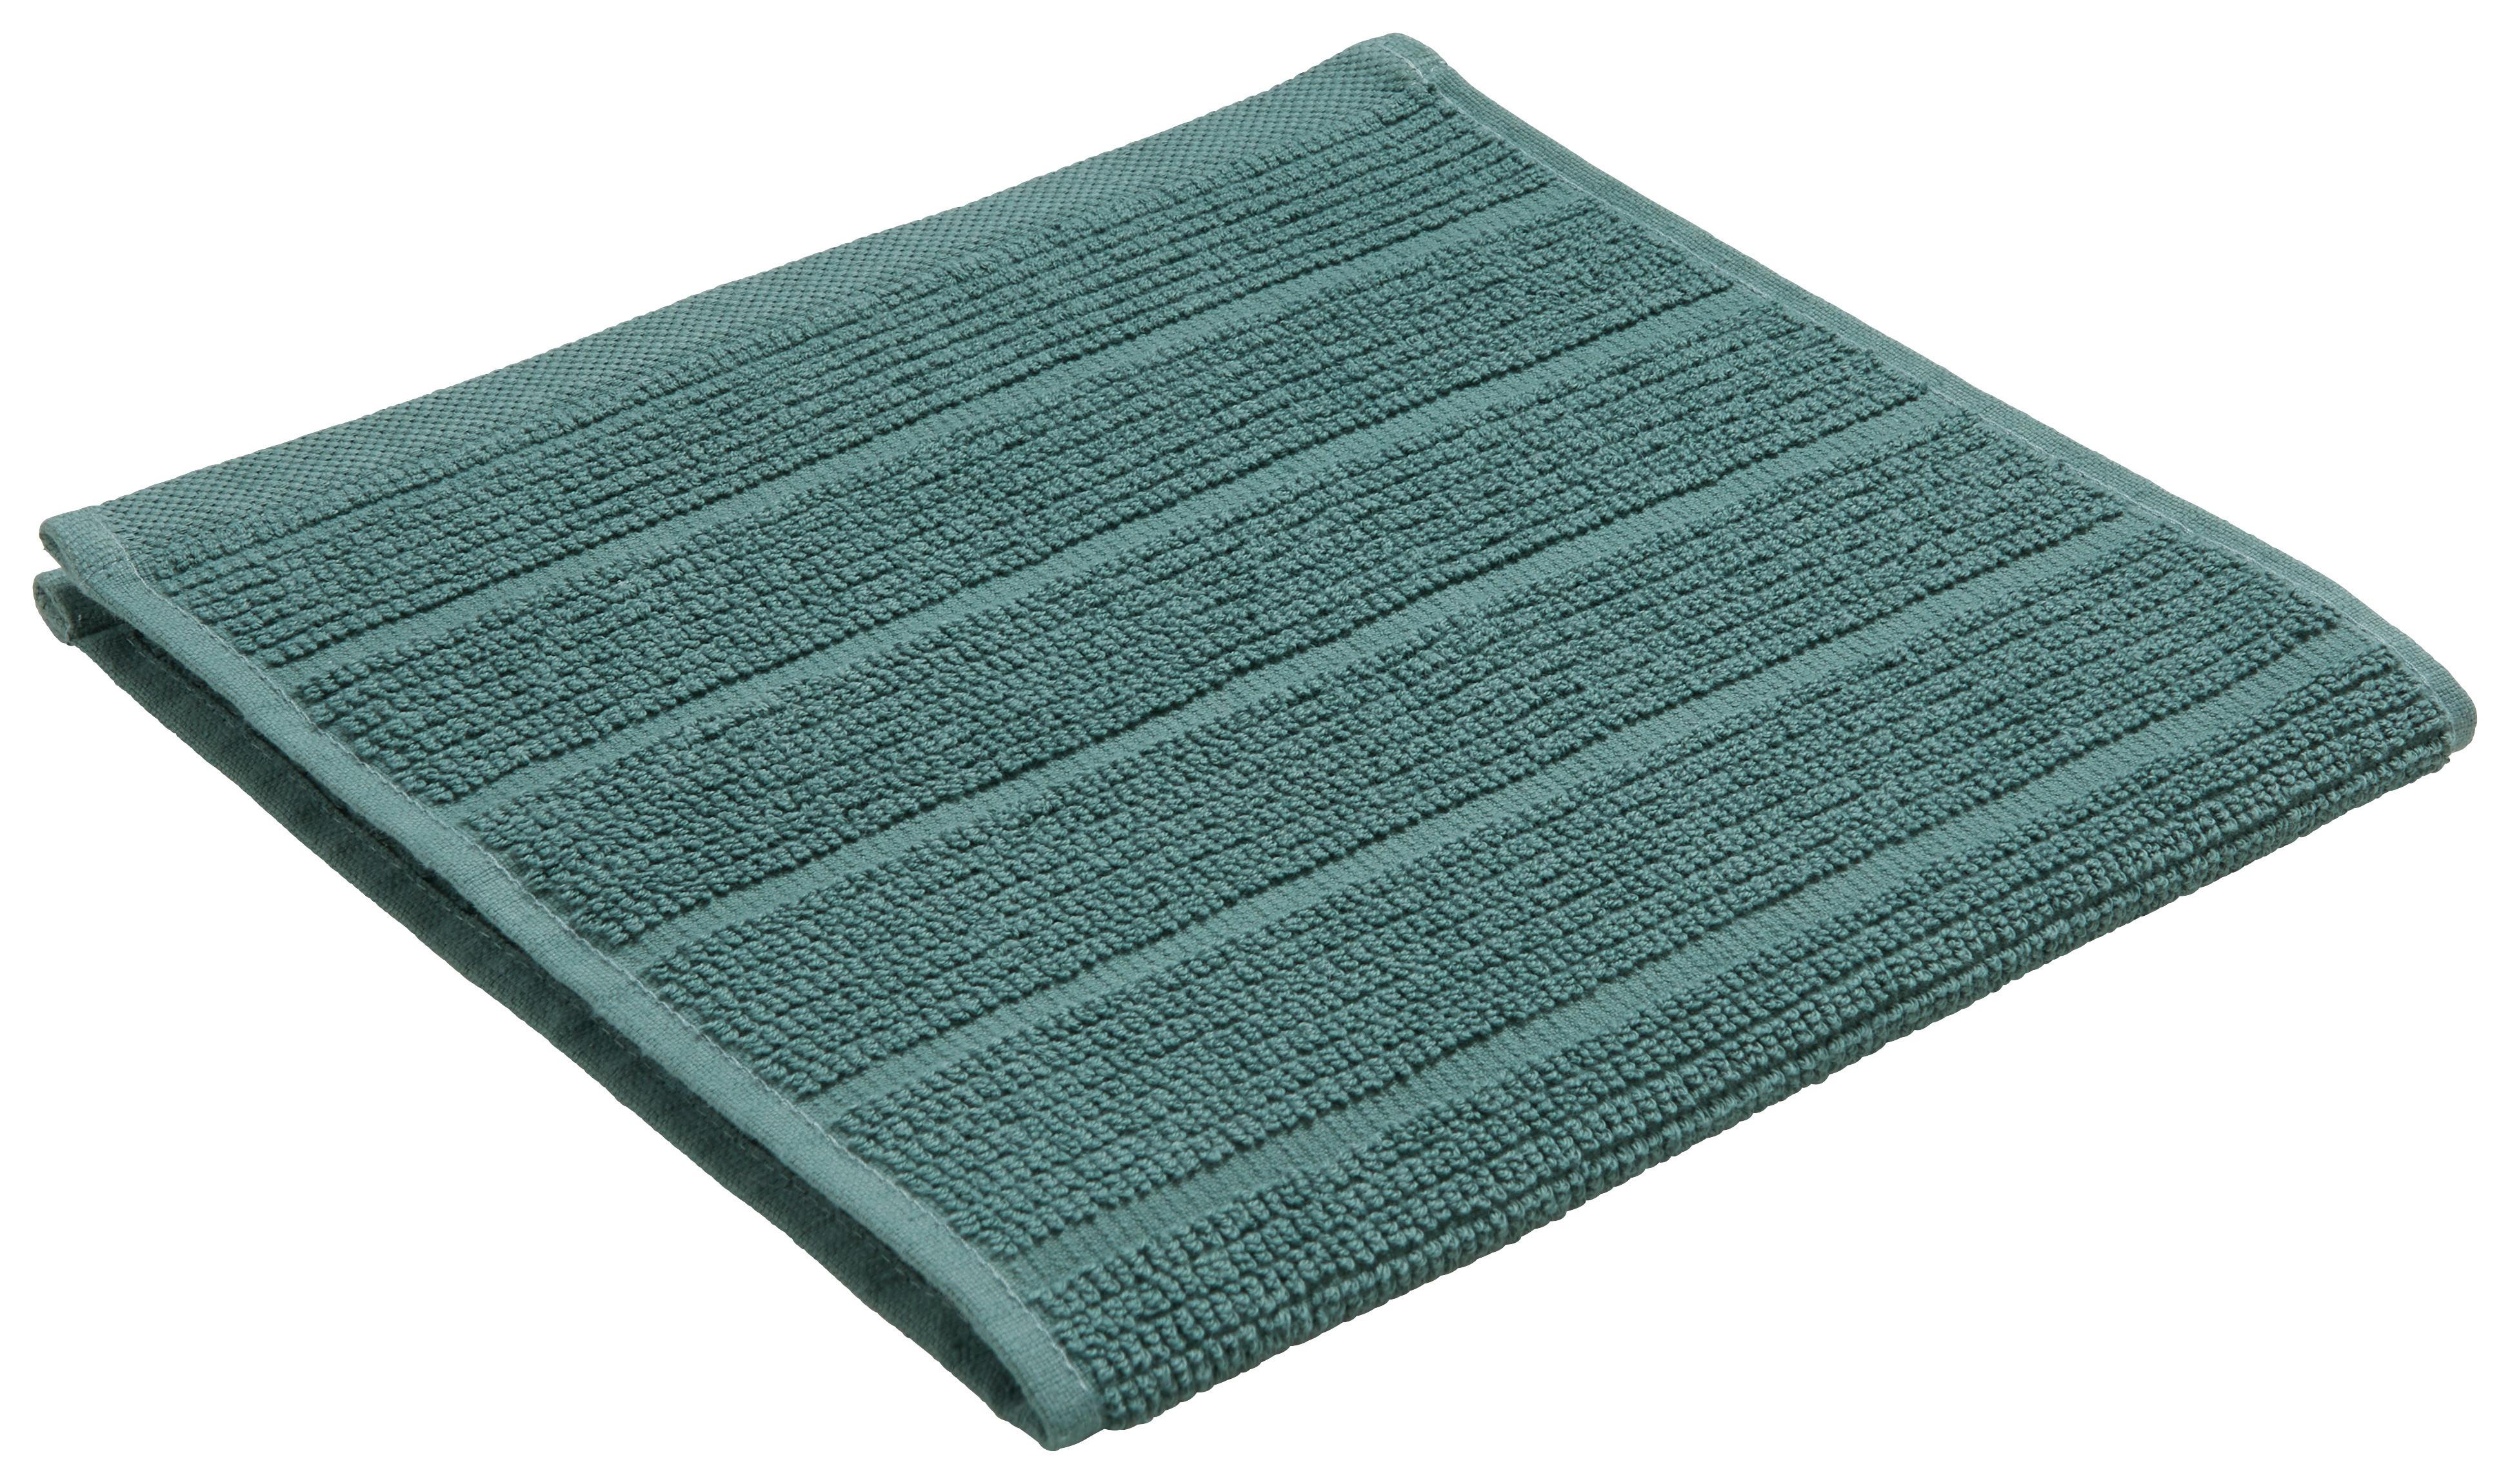 Brisača Anna - zelena, tekstil (30/50cm) - Modern Living